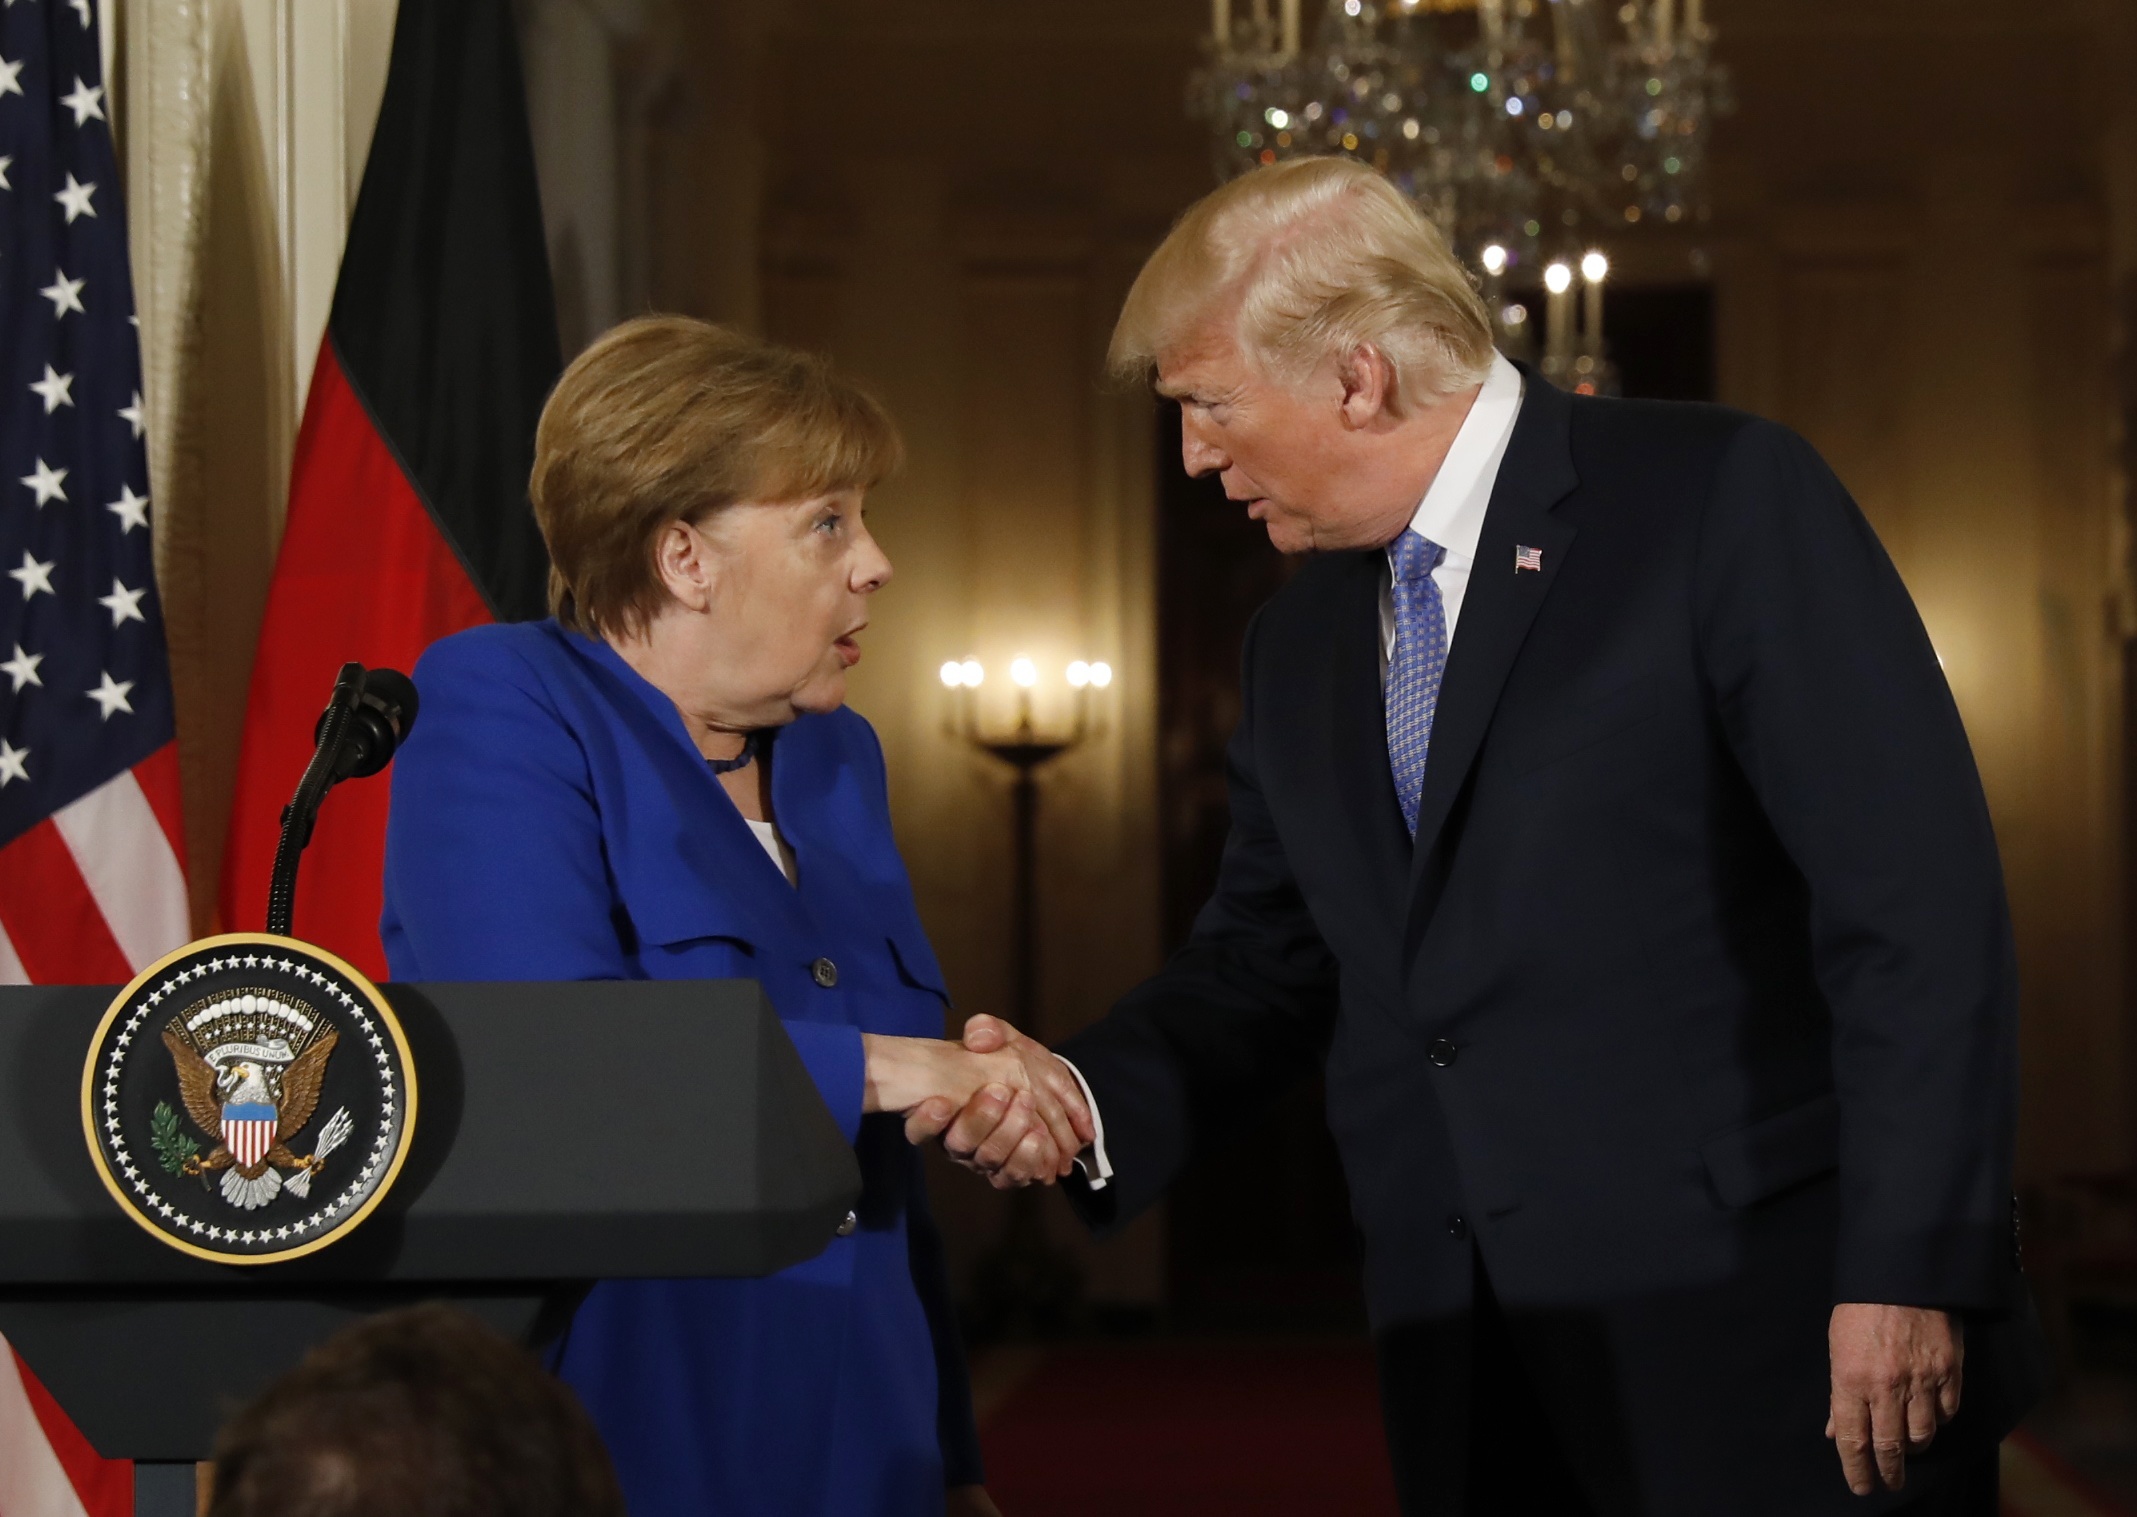 Ξεσπάθωσε ο Τραμπ: Η Γερμανία πλουτίζει τη Ρωσία και εμείς πληρώνουμε για να την προστατεύουμε από αυτήν – Μέρκελ: Λαμβάνουμε ανεξάρτητες αποφάσεις